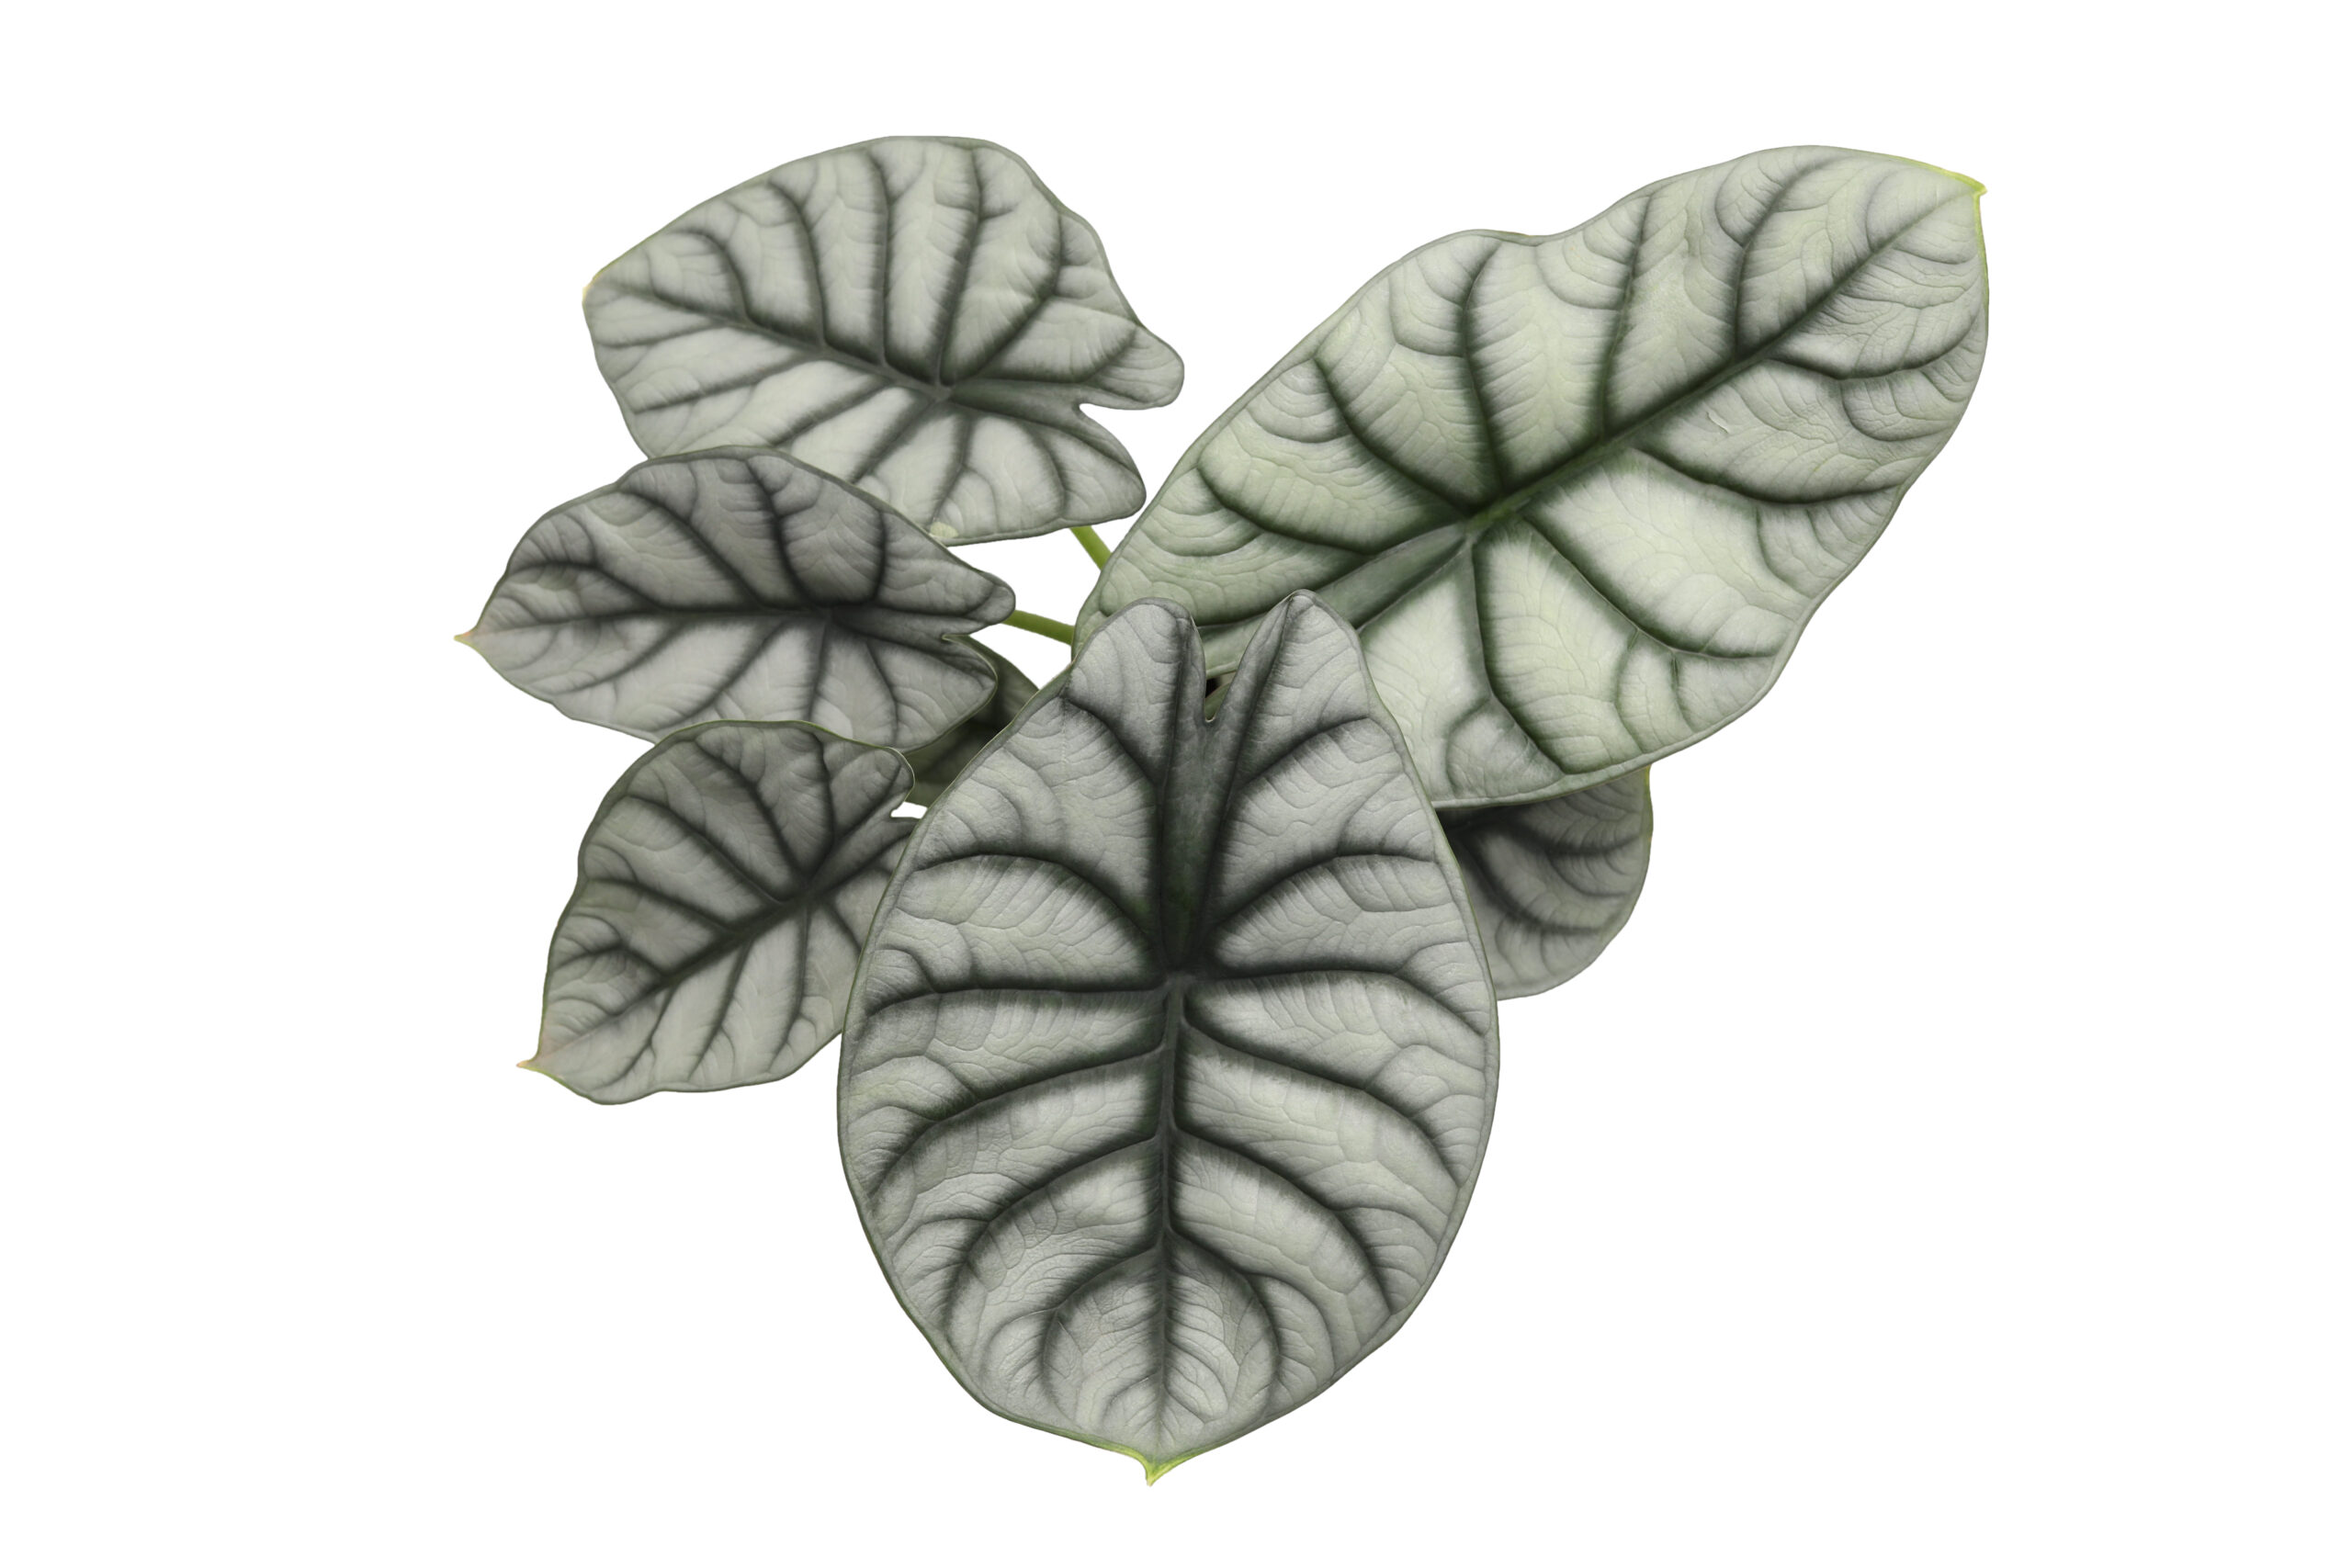 alocasia silver dragon plants leaves closeup